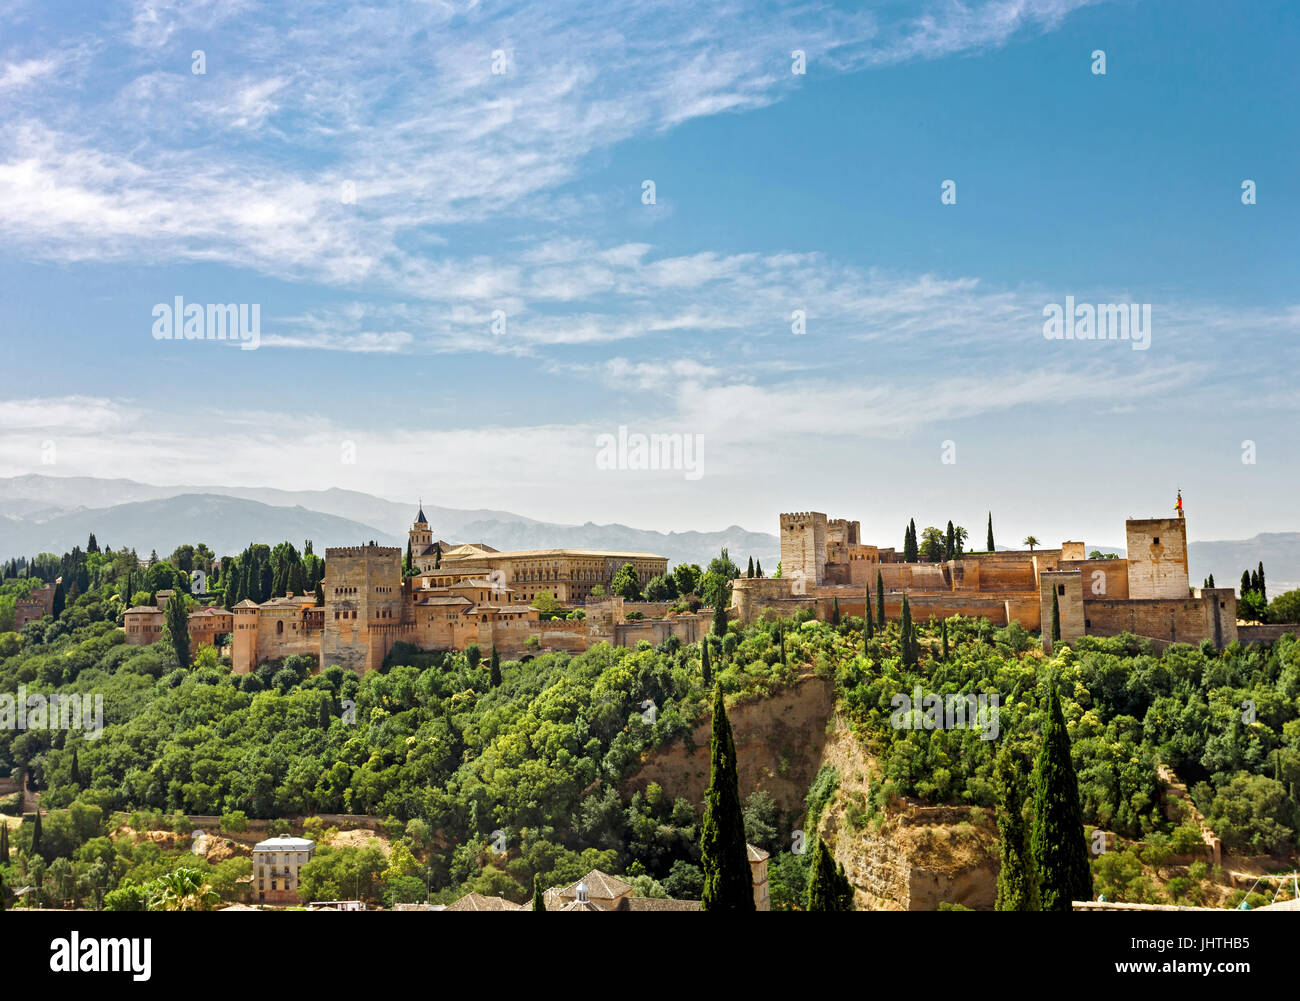 Palais de l'Alhambra à Grenade, Espagne. vue panoramique sur l'ancien palais arabe médiévale à l'andalousie. célèbre destination touristique. Banque D'Images